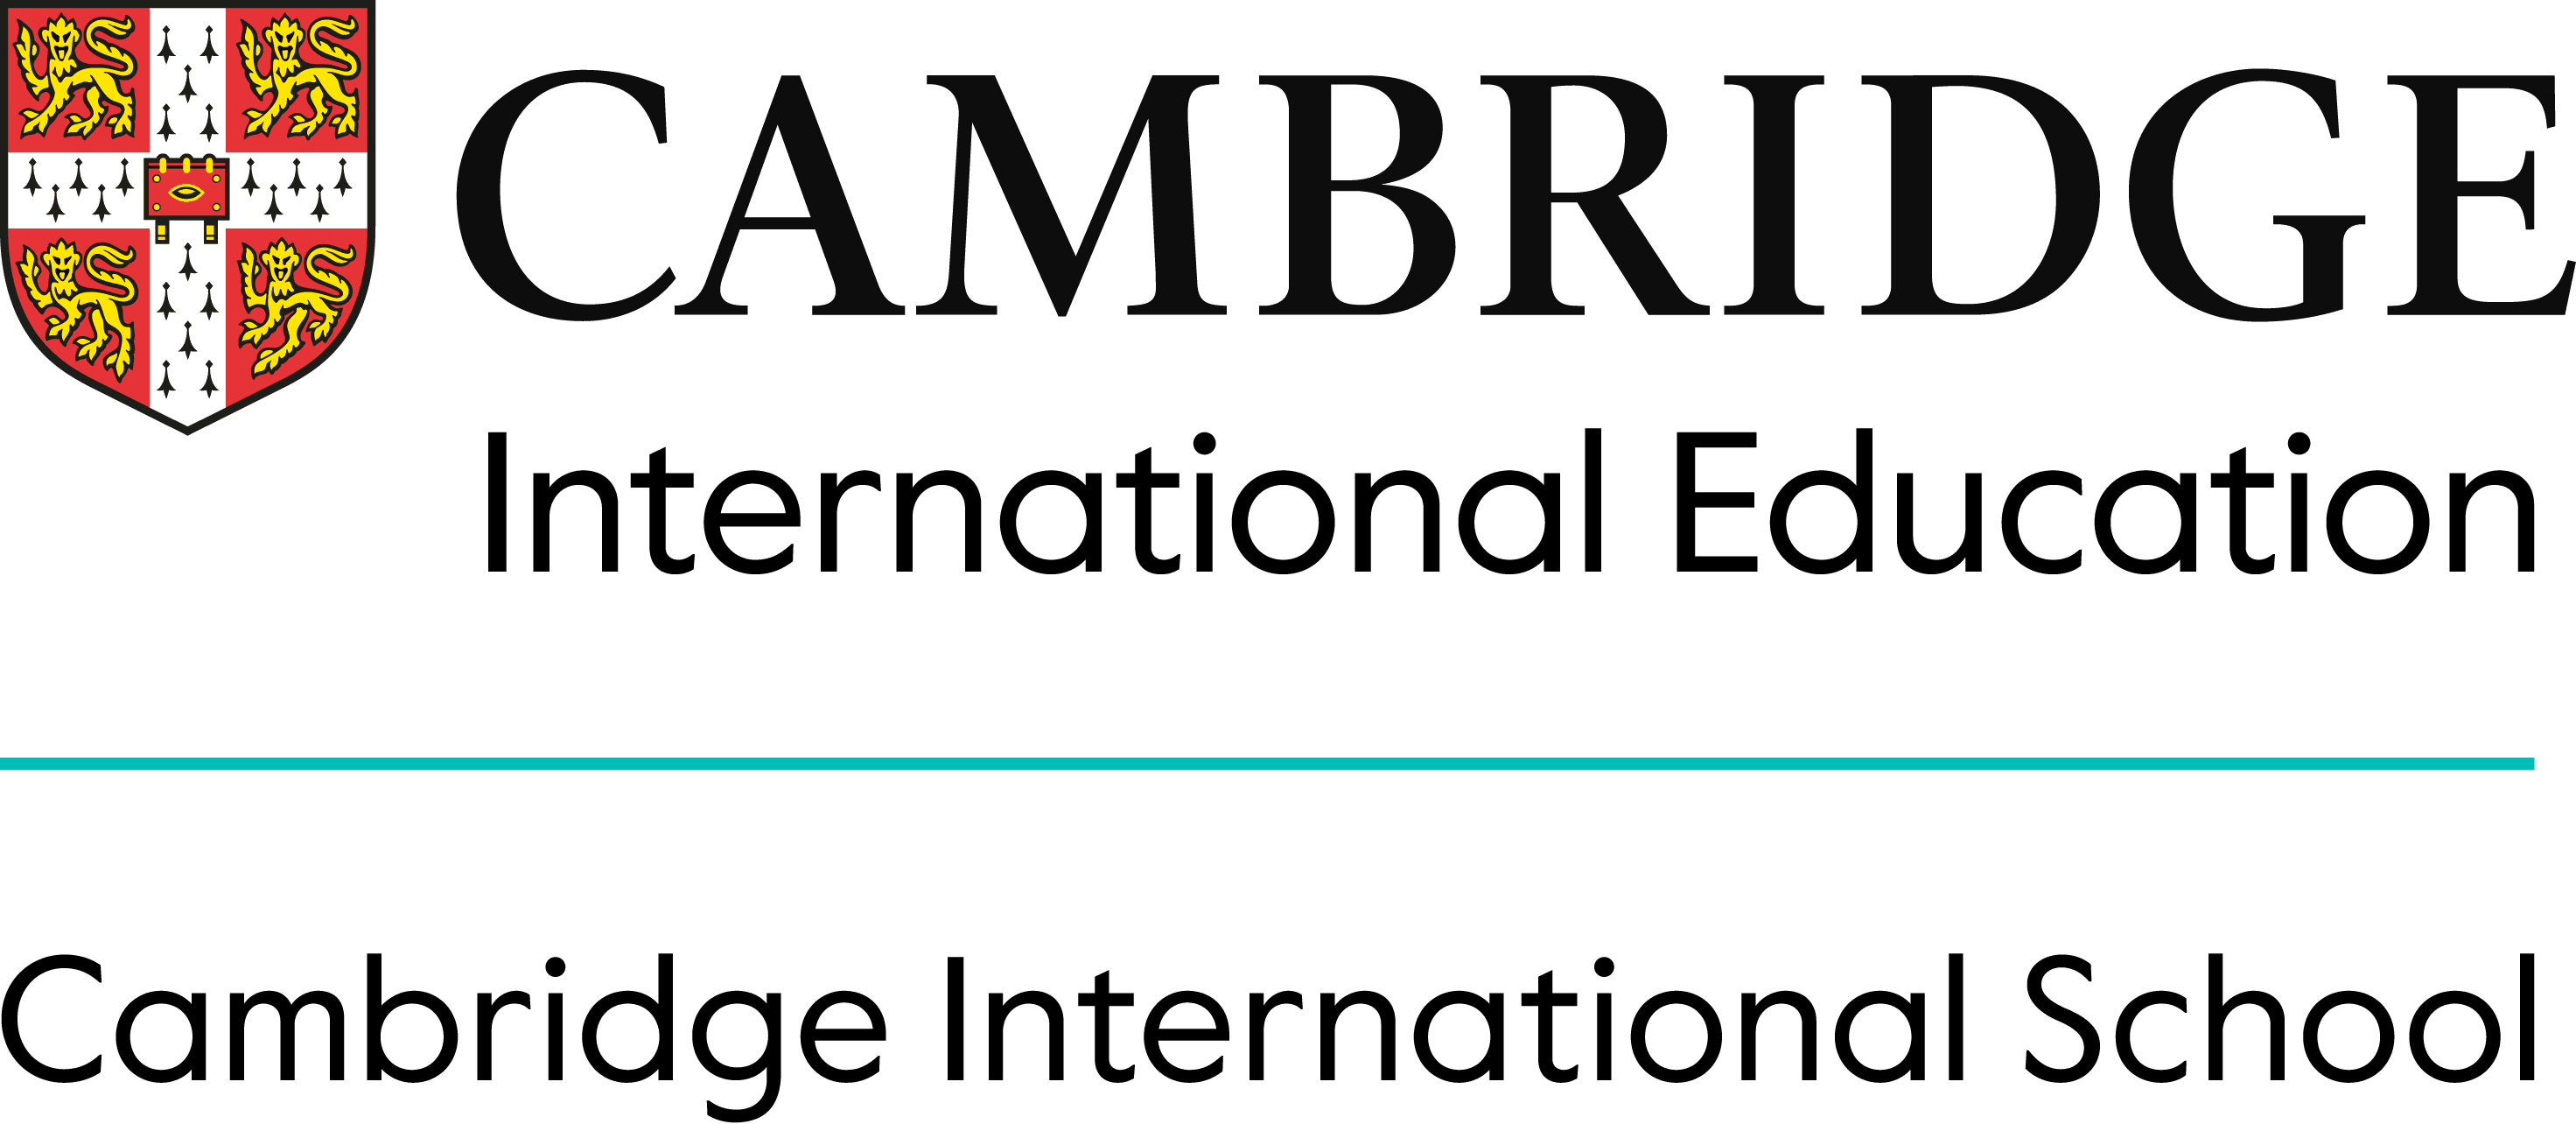 VAS được công nhận là Thành viên các Trường Quốc tế Cambridge (Cambridge School) bởi Cơ quan Đánh giá Giáo dục Quốc tế thuộc Đại học Cambridge (CAIE). Học sinh sẽ thi để lấy các bằng cấp quốc tế của Cambridge như Cambridge Checkpoints, IGCSE và A Level.